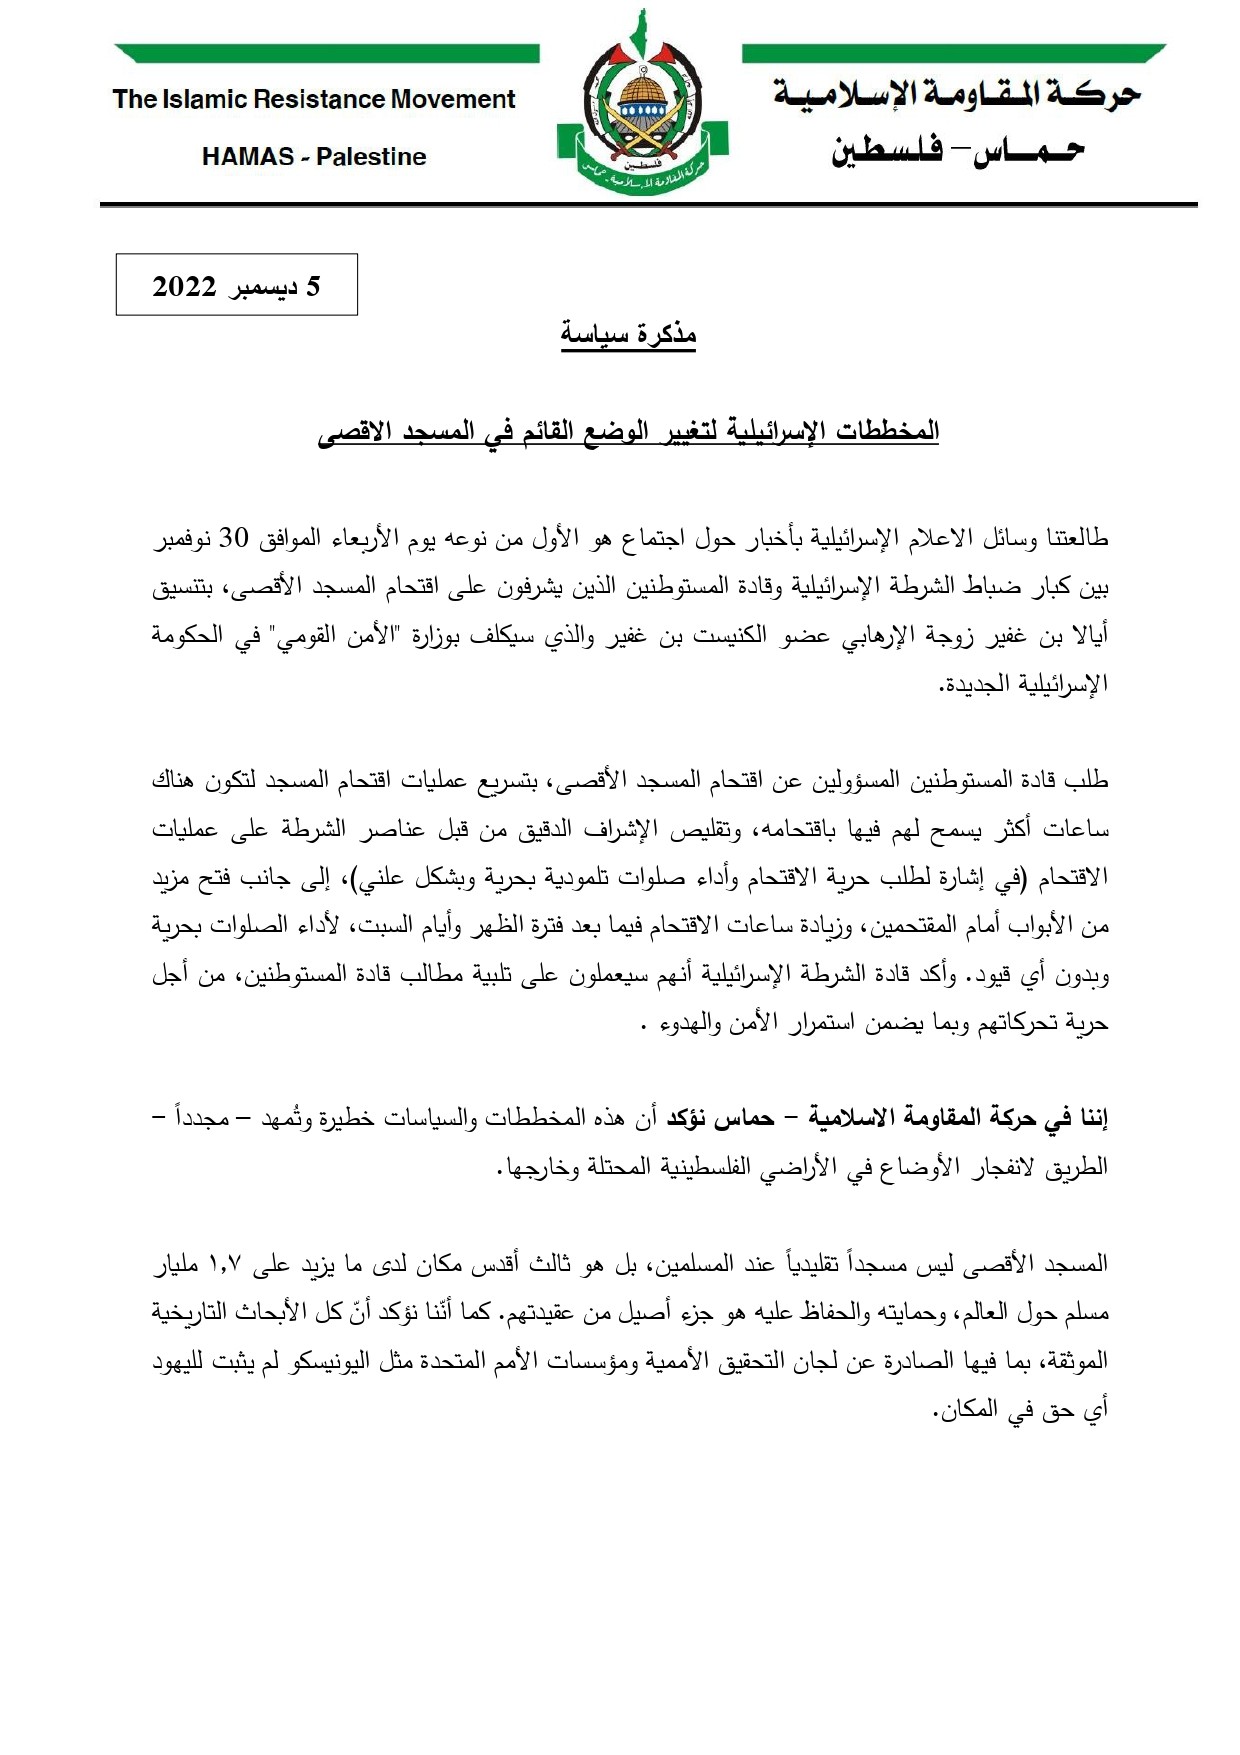 مذكرة سياسة من حماس_page-0001.jpg